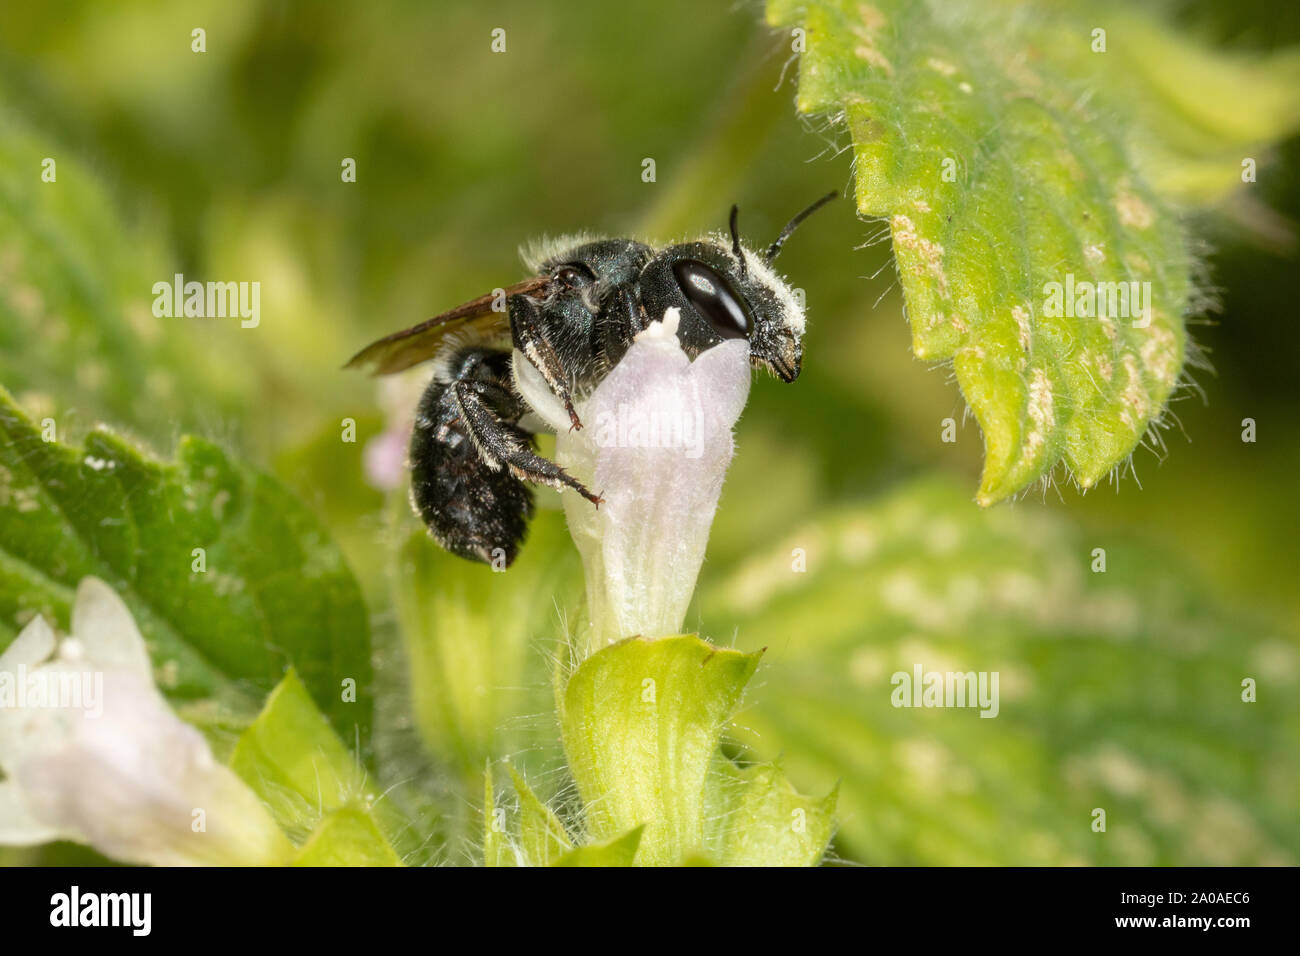 Femelle Bleue abeille maçonne avec du pollen sur la tête, montrant comment des abeilles solitaires sont sous-apprécié, les insectes d'importance économique. Banque D'Images